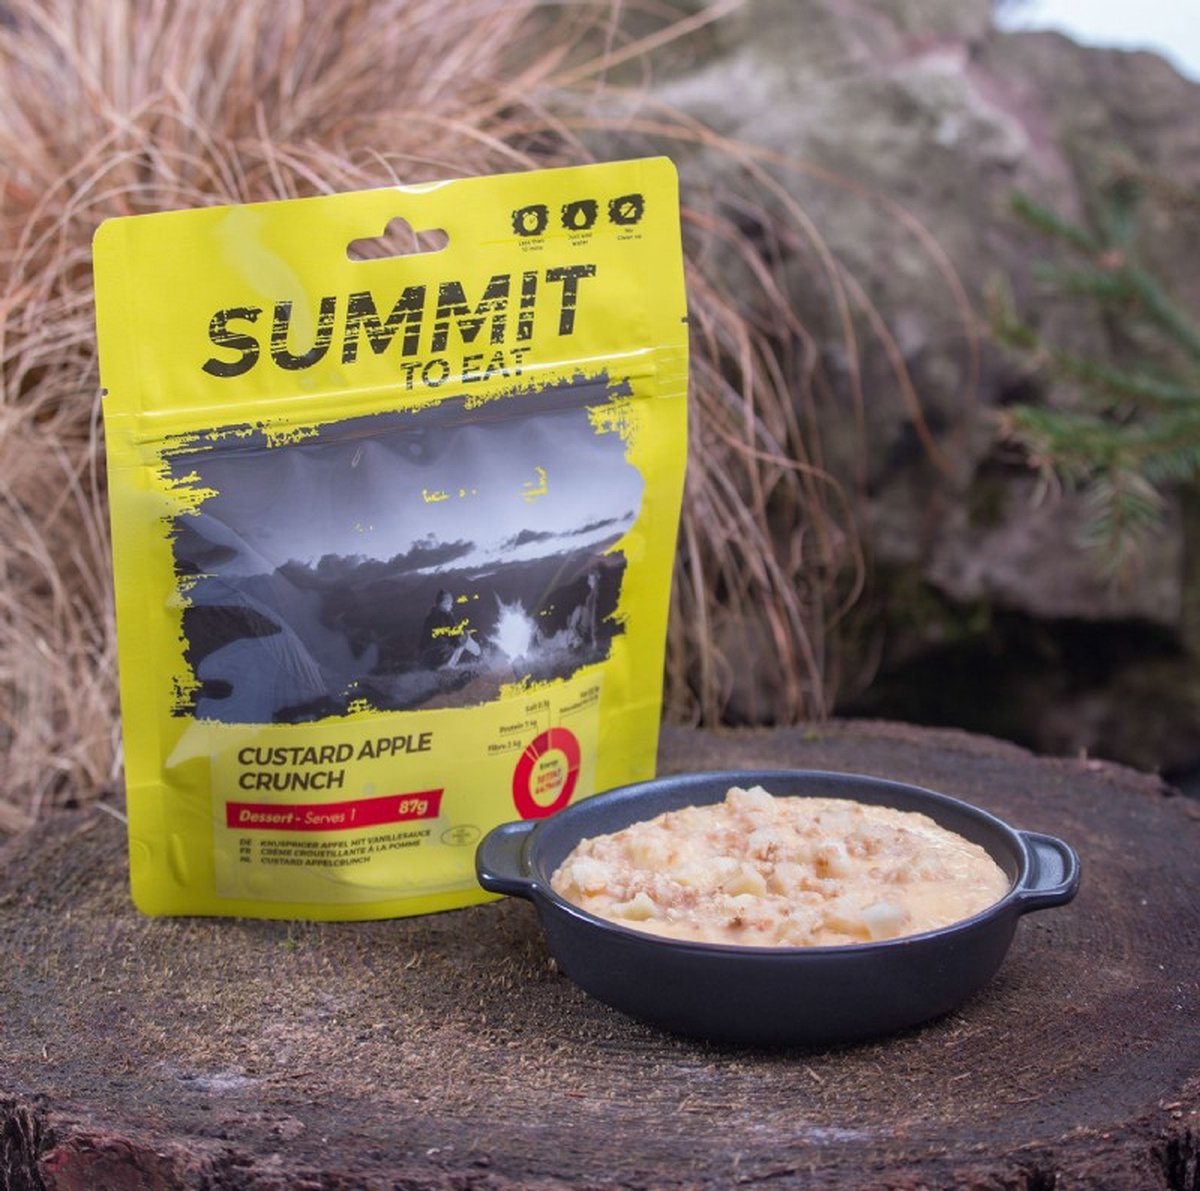 Summit to Eat - Custard Apple Crunch - vriesdroogmaaltijd - outdoorfood - trekking maaltijd - survival food - buitensportvoeding - prepper - trekkingfood